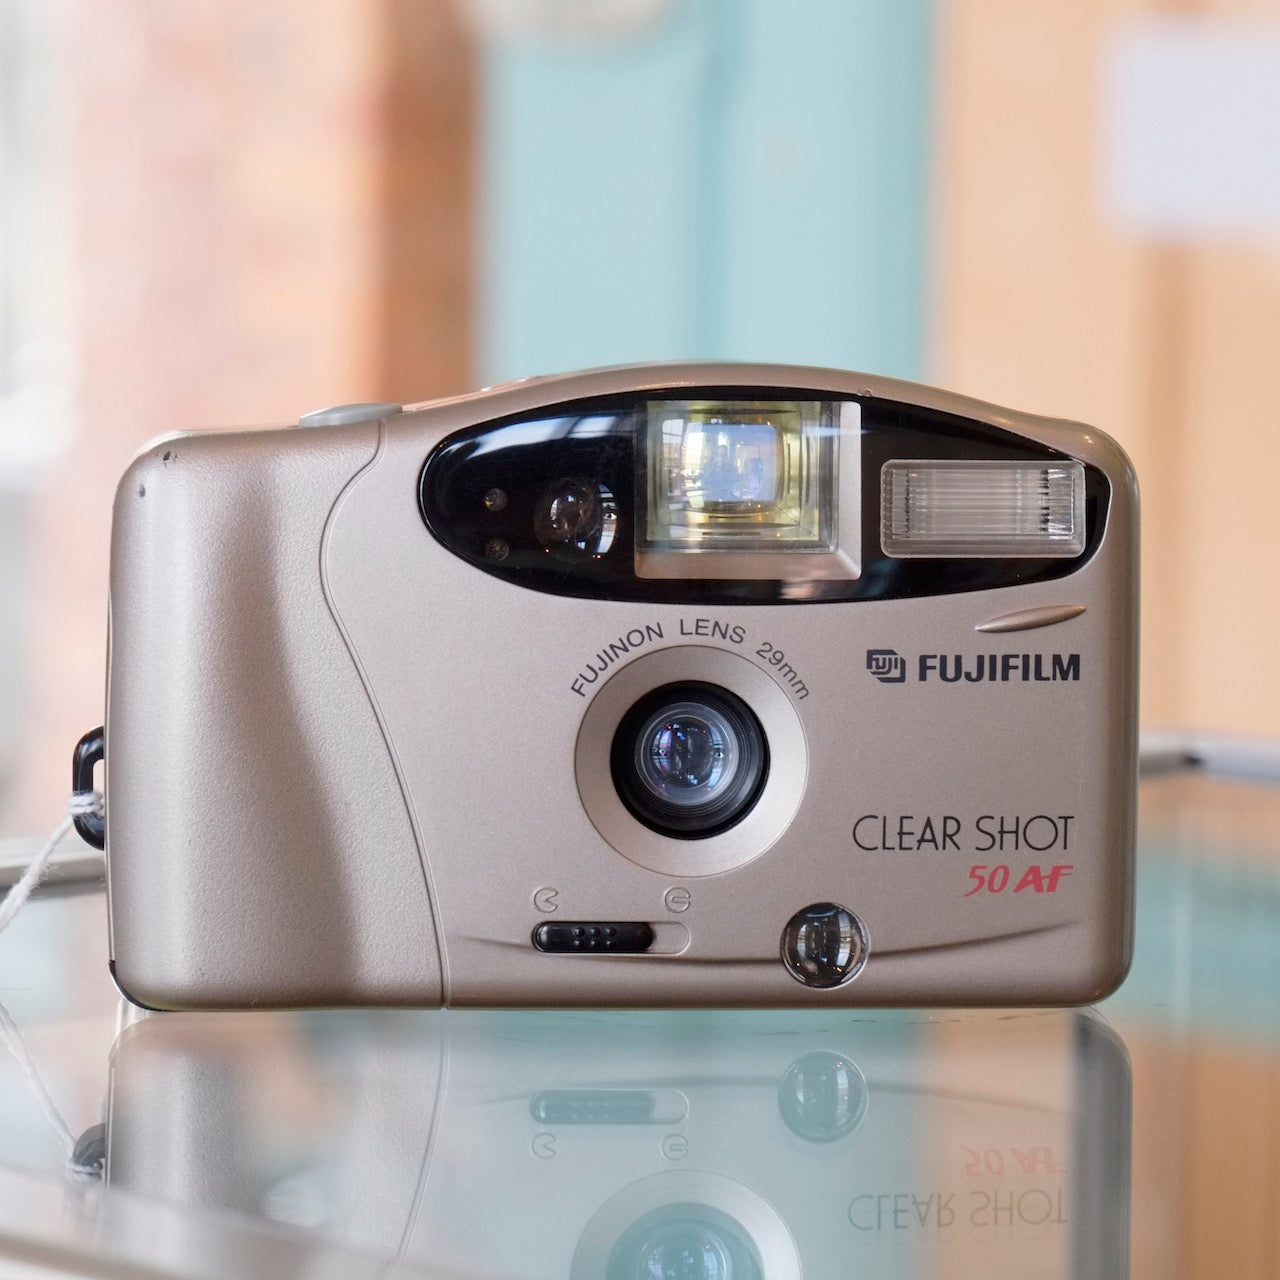 Fujifilm Clear Shot 50 AF